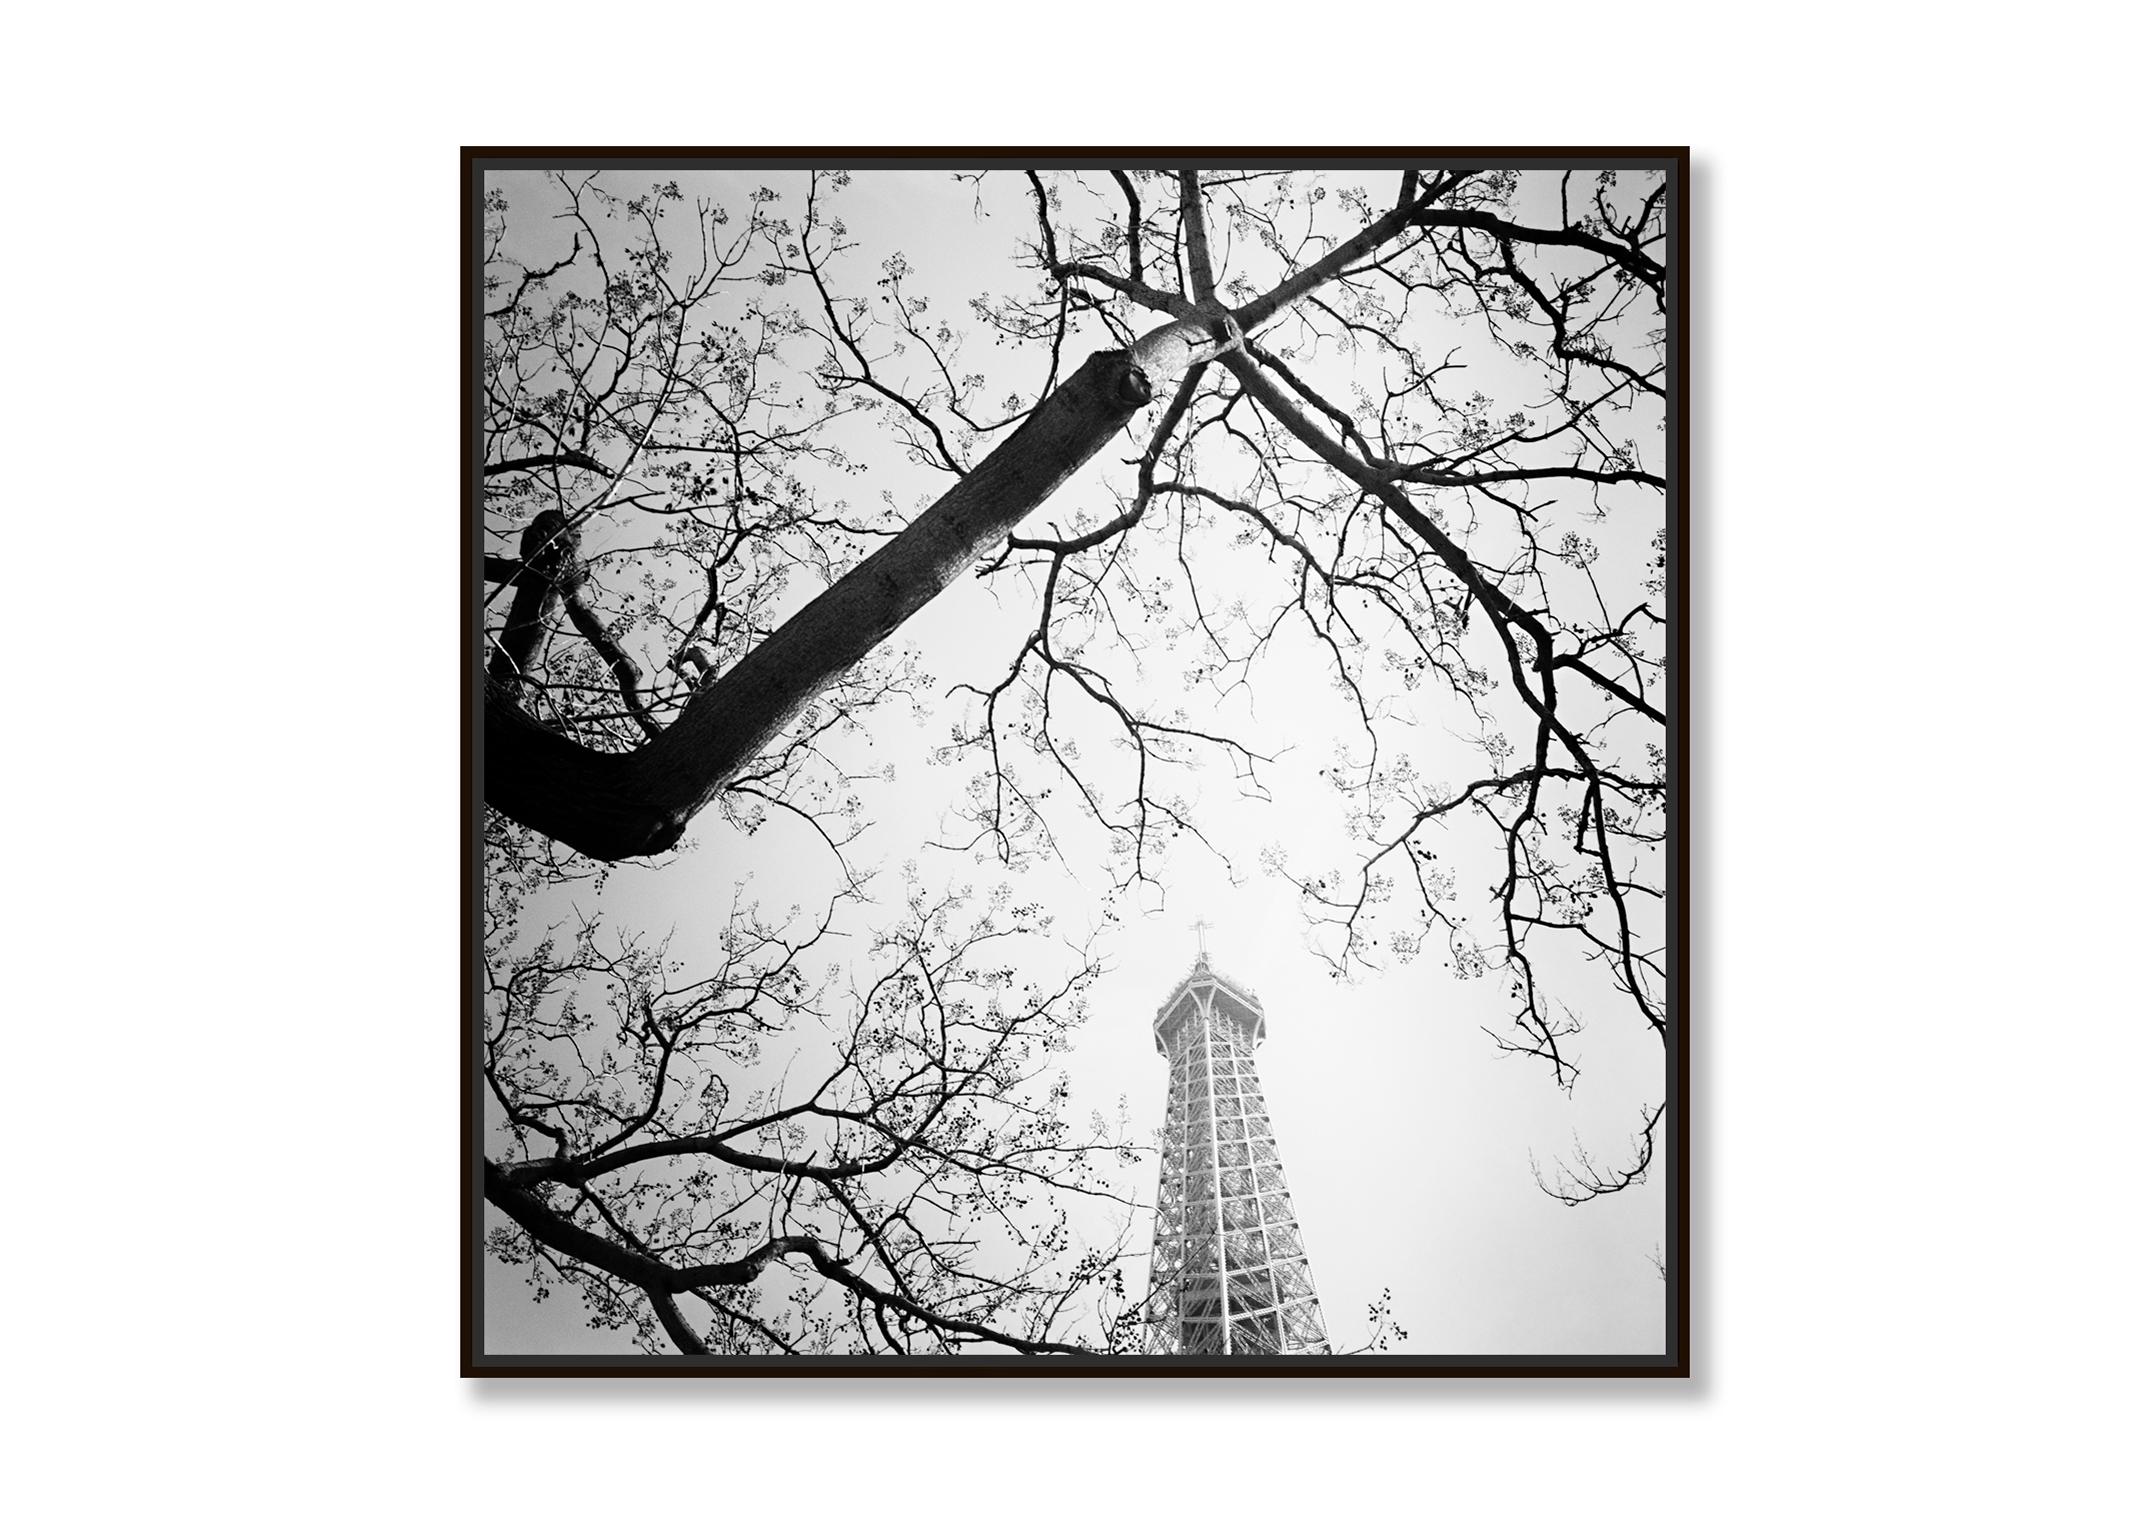 Baum und der Turm, Paris, Frankreich, Schwarz-Weiß-Kunstfotografie, Landschaft – Photograph von Gerald Berghammer, Ina Forstinger